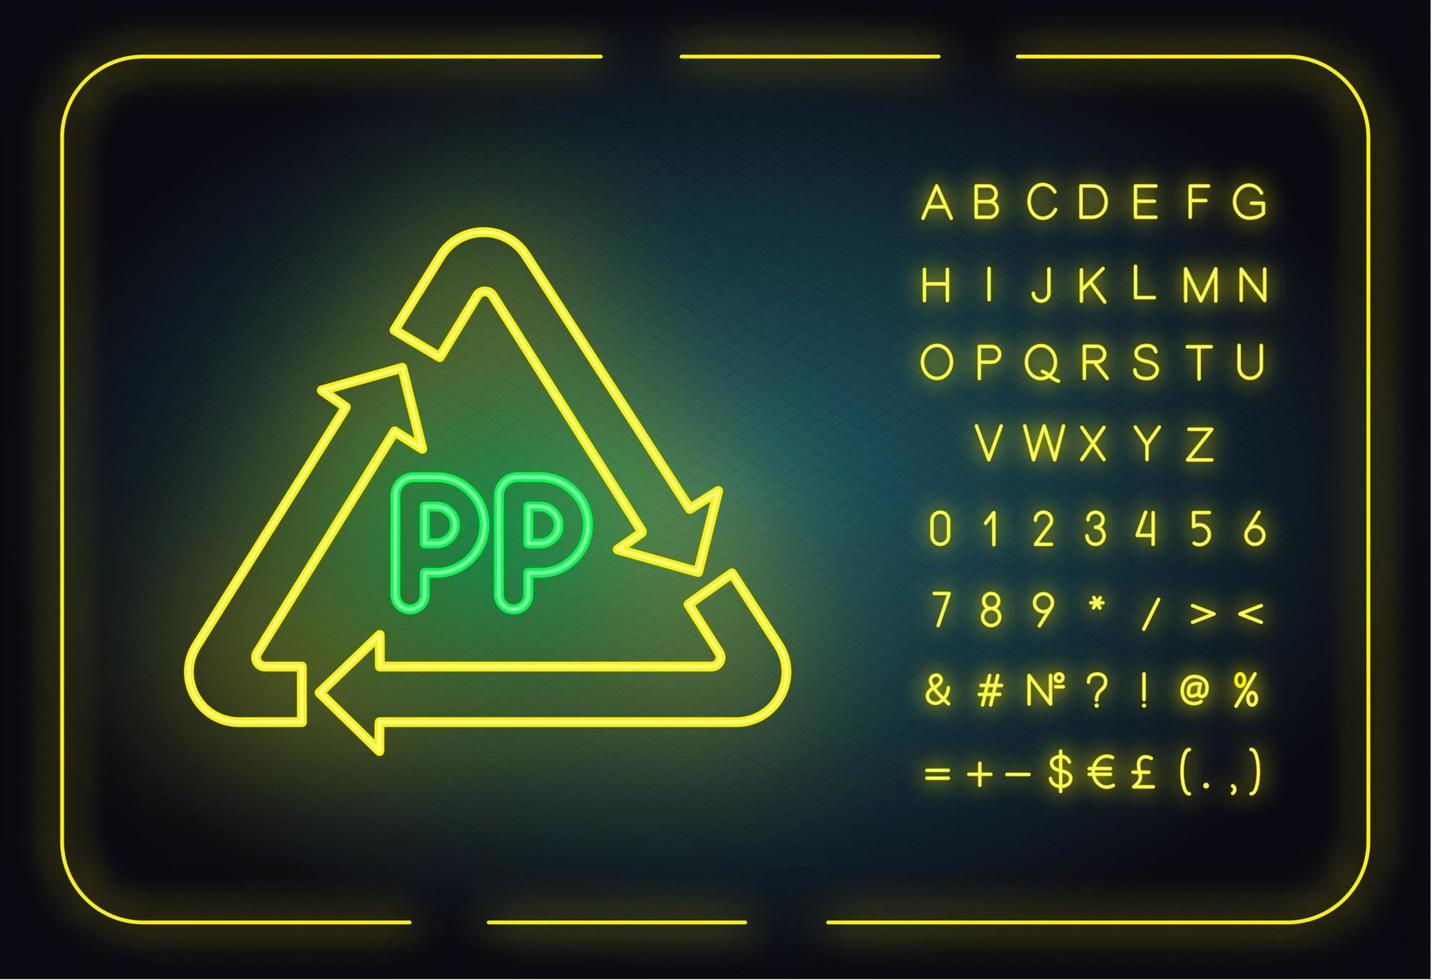 icona della luce al neon simbolo pp. marcatura in polimero termoplastico. codice di identificazione della resina. triangolo freccia. chimica organica. segno luminoso con alfabeto, numeri e simboli. illustrazione vettoriale isolato